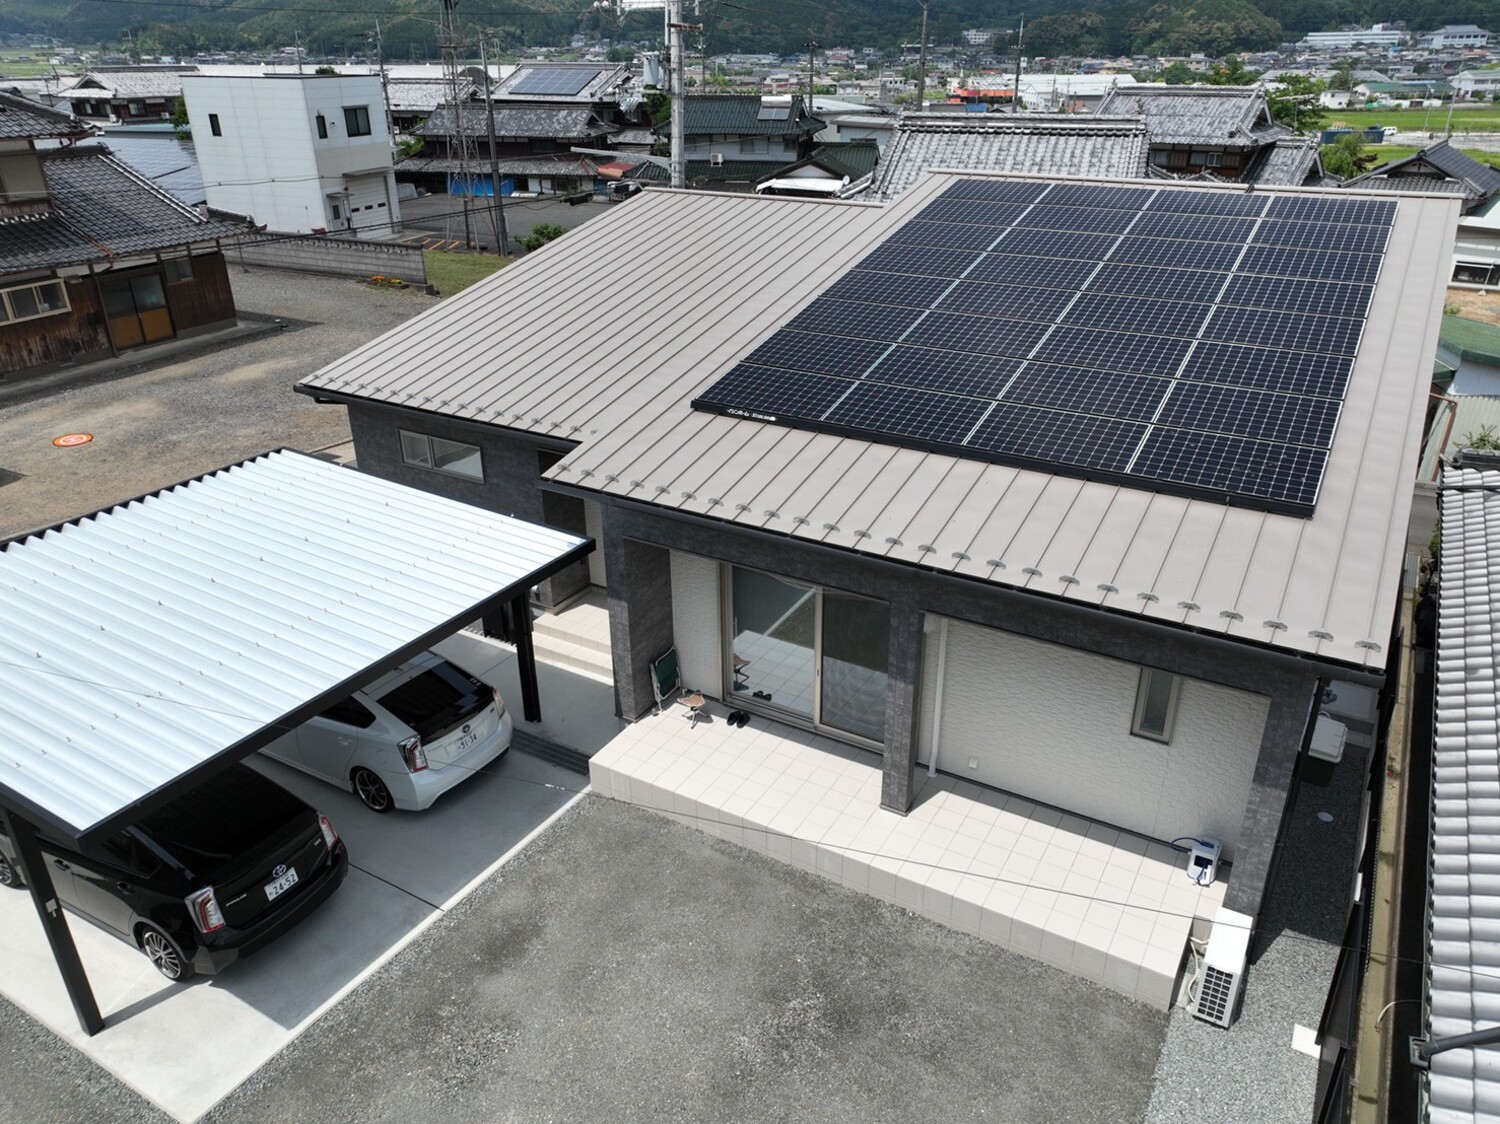 ～人気の平屋のお住まい～
大型ソーラー12.8kW+テスラ社製蓄電池13.5kWh搭載で光熱費の出費を抑え暮らしを快適に。